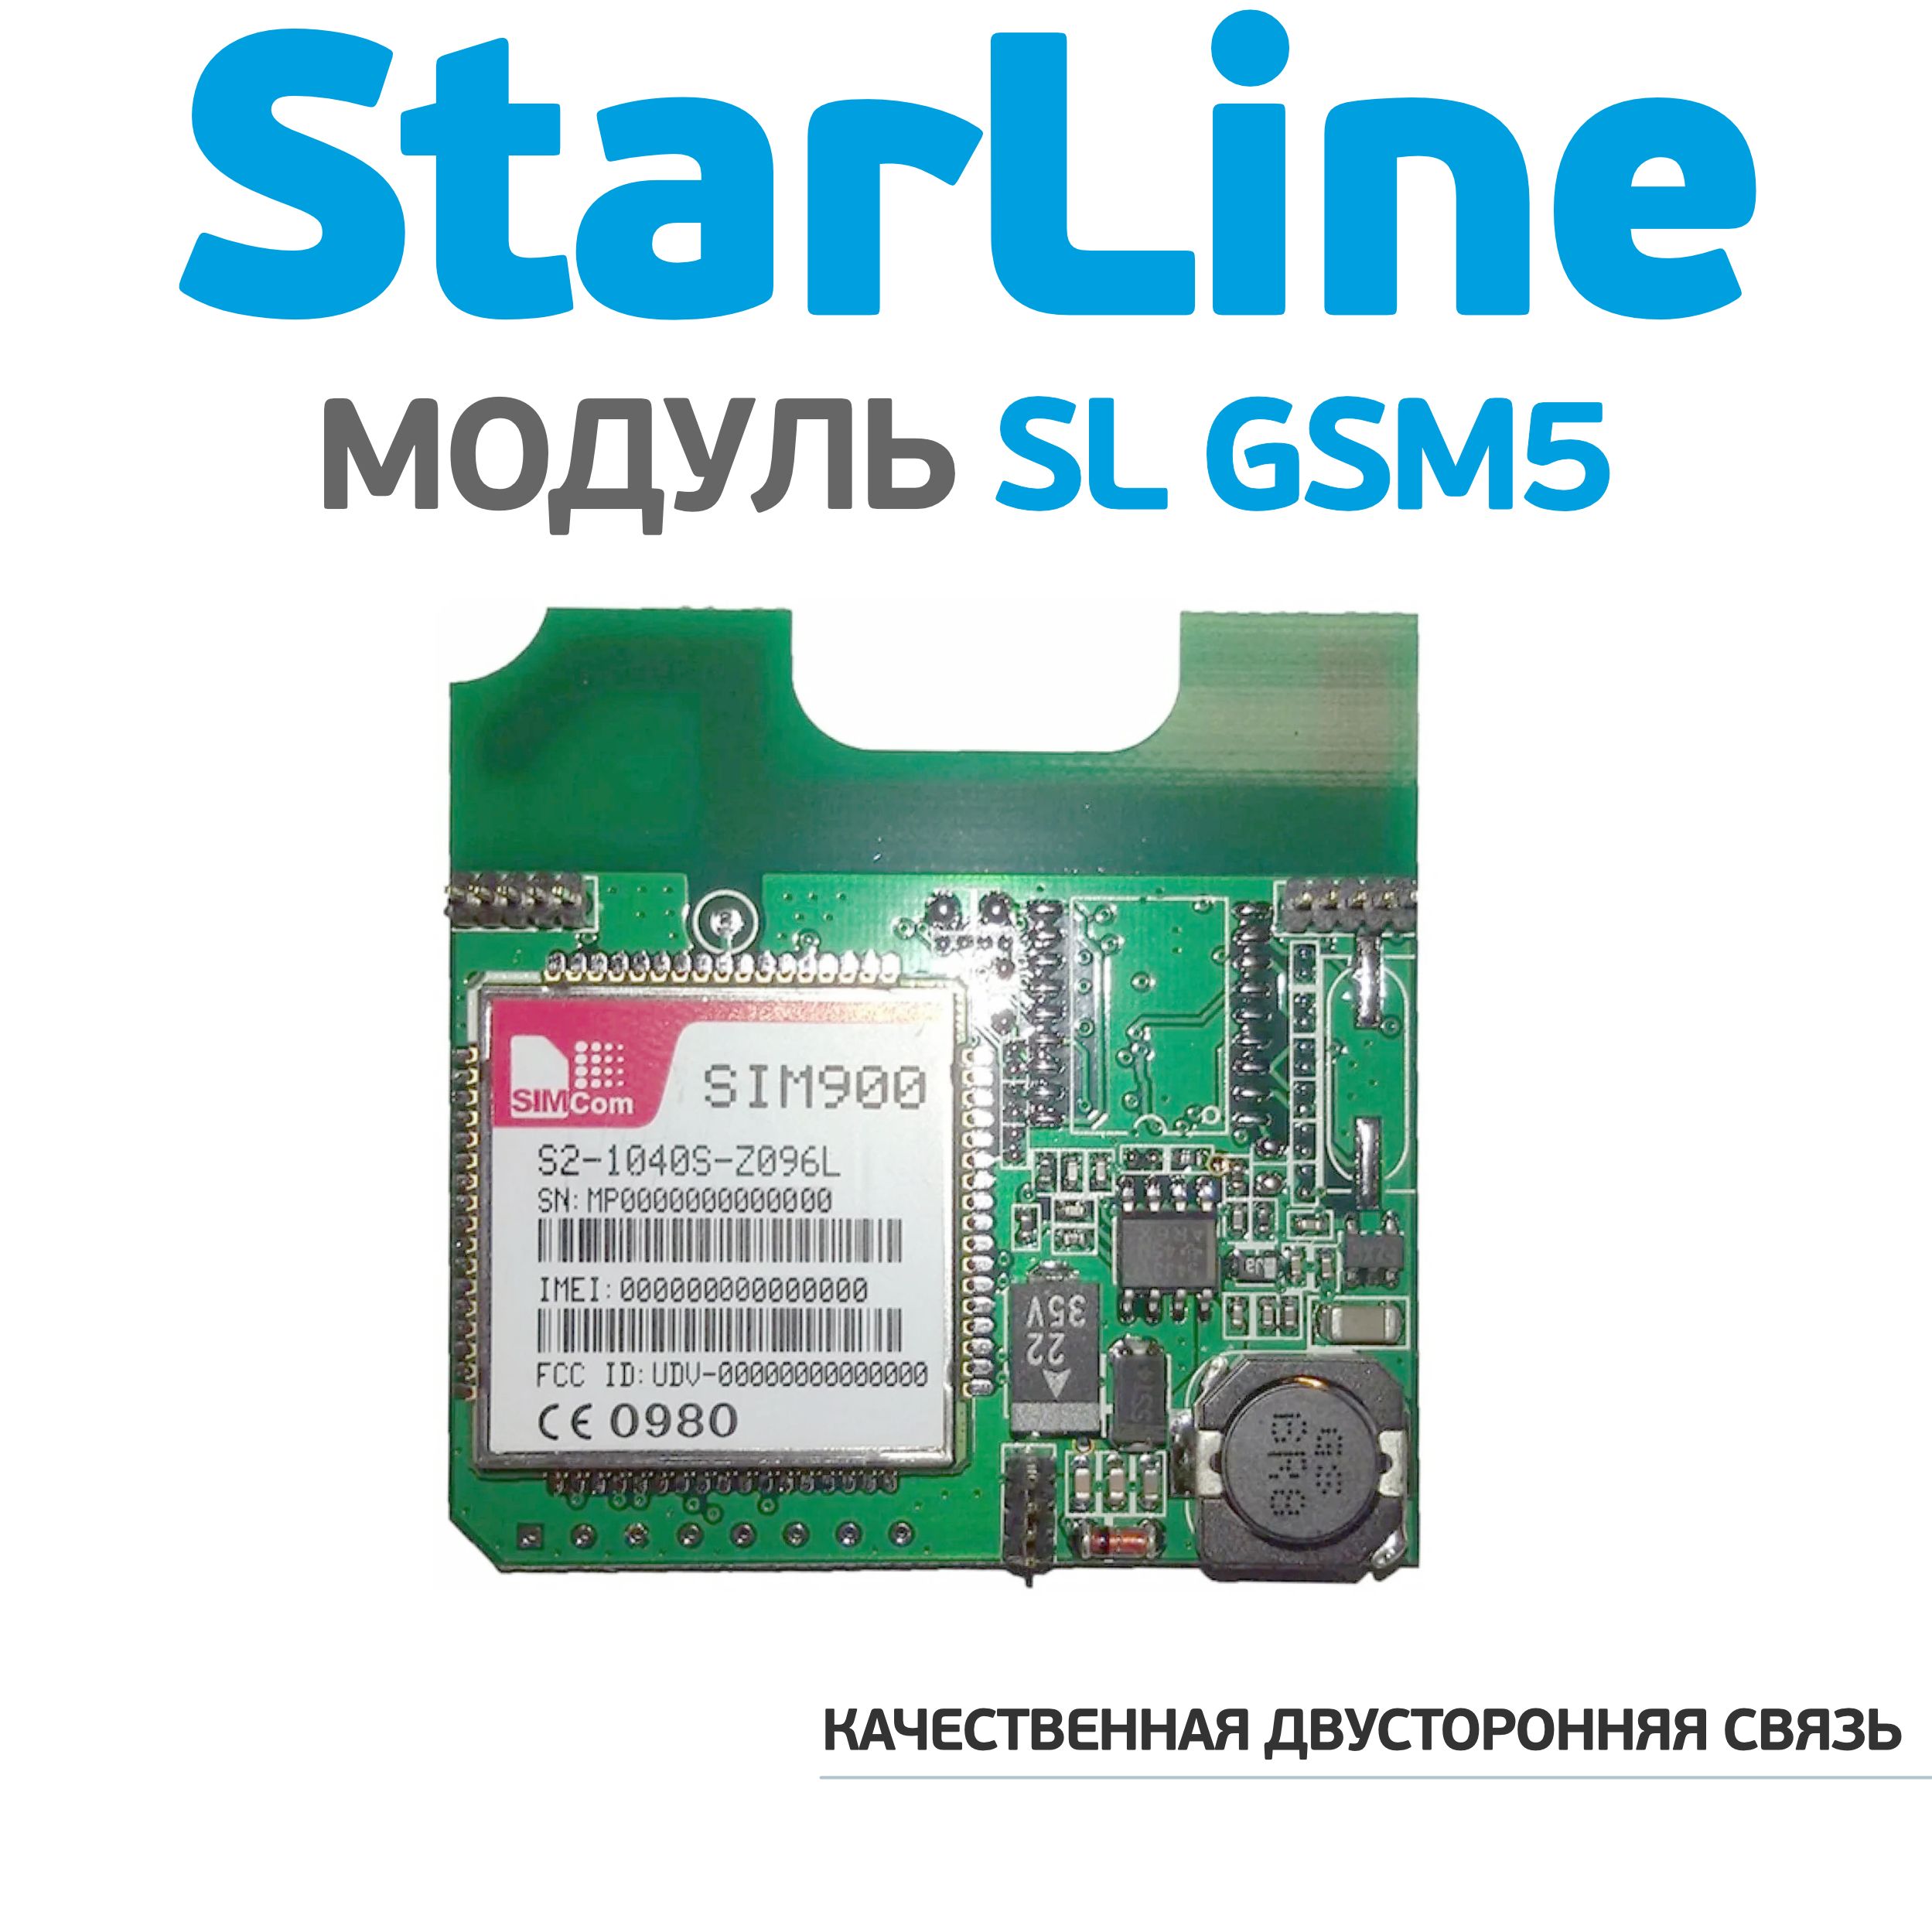 Starline gsm отзывы. STARLINE gsm5-мастер. Модуль STARLINE SL gsm5 мастер. Модуль SL GSM+BT-6 мастер.